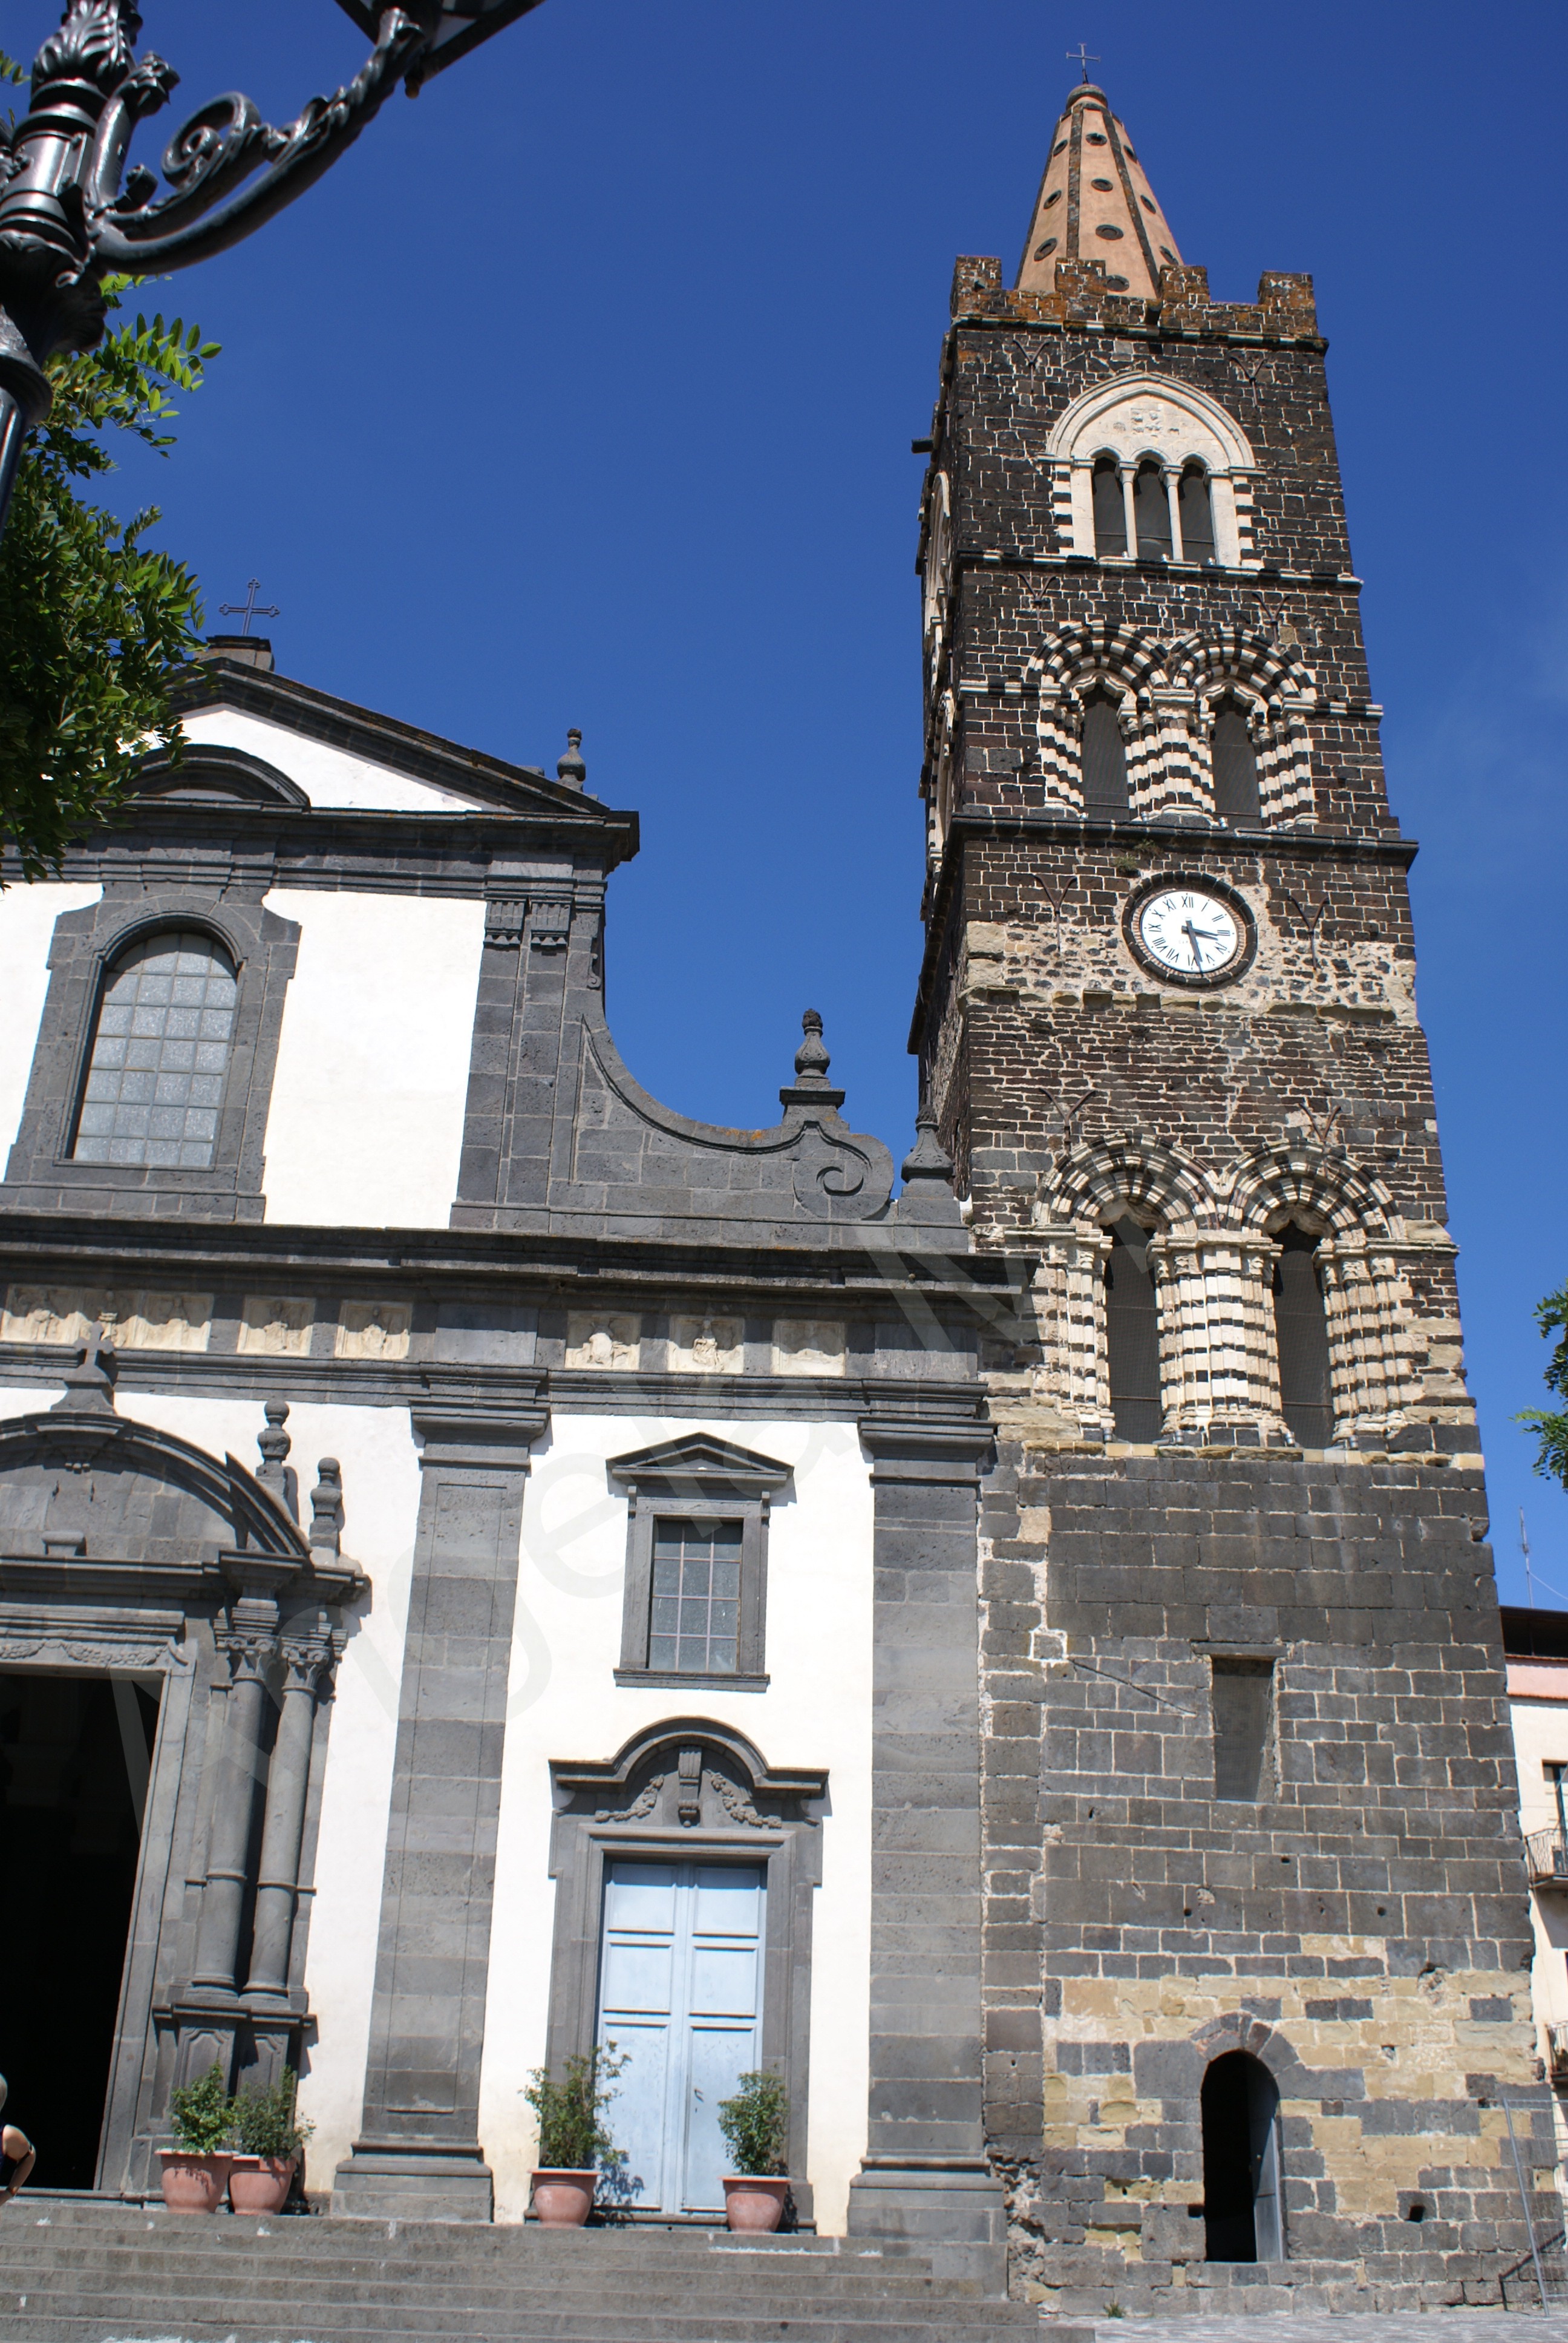 Campanile della chiesa, XII-XIII secolo di San Martino